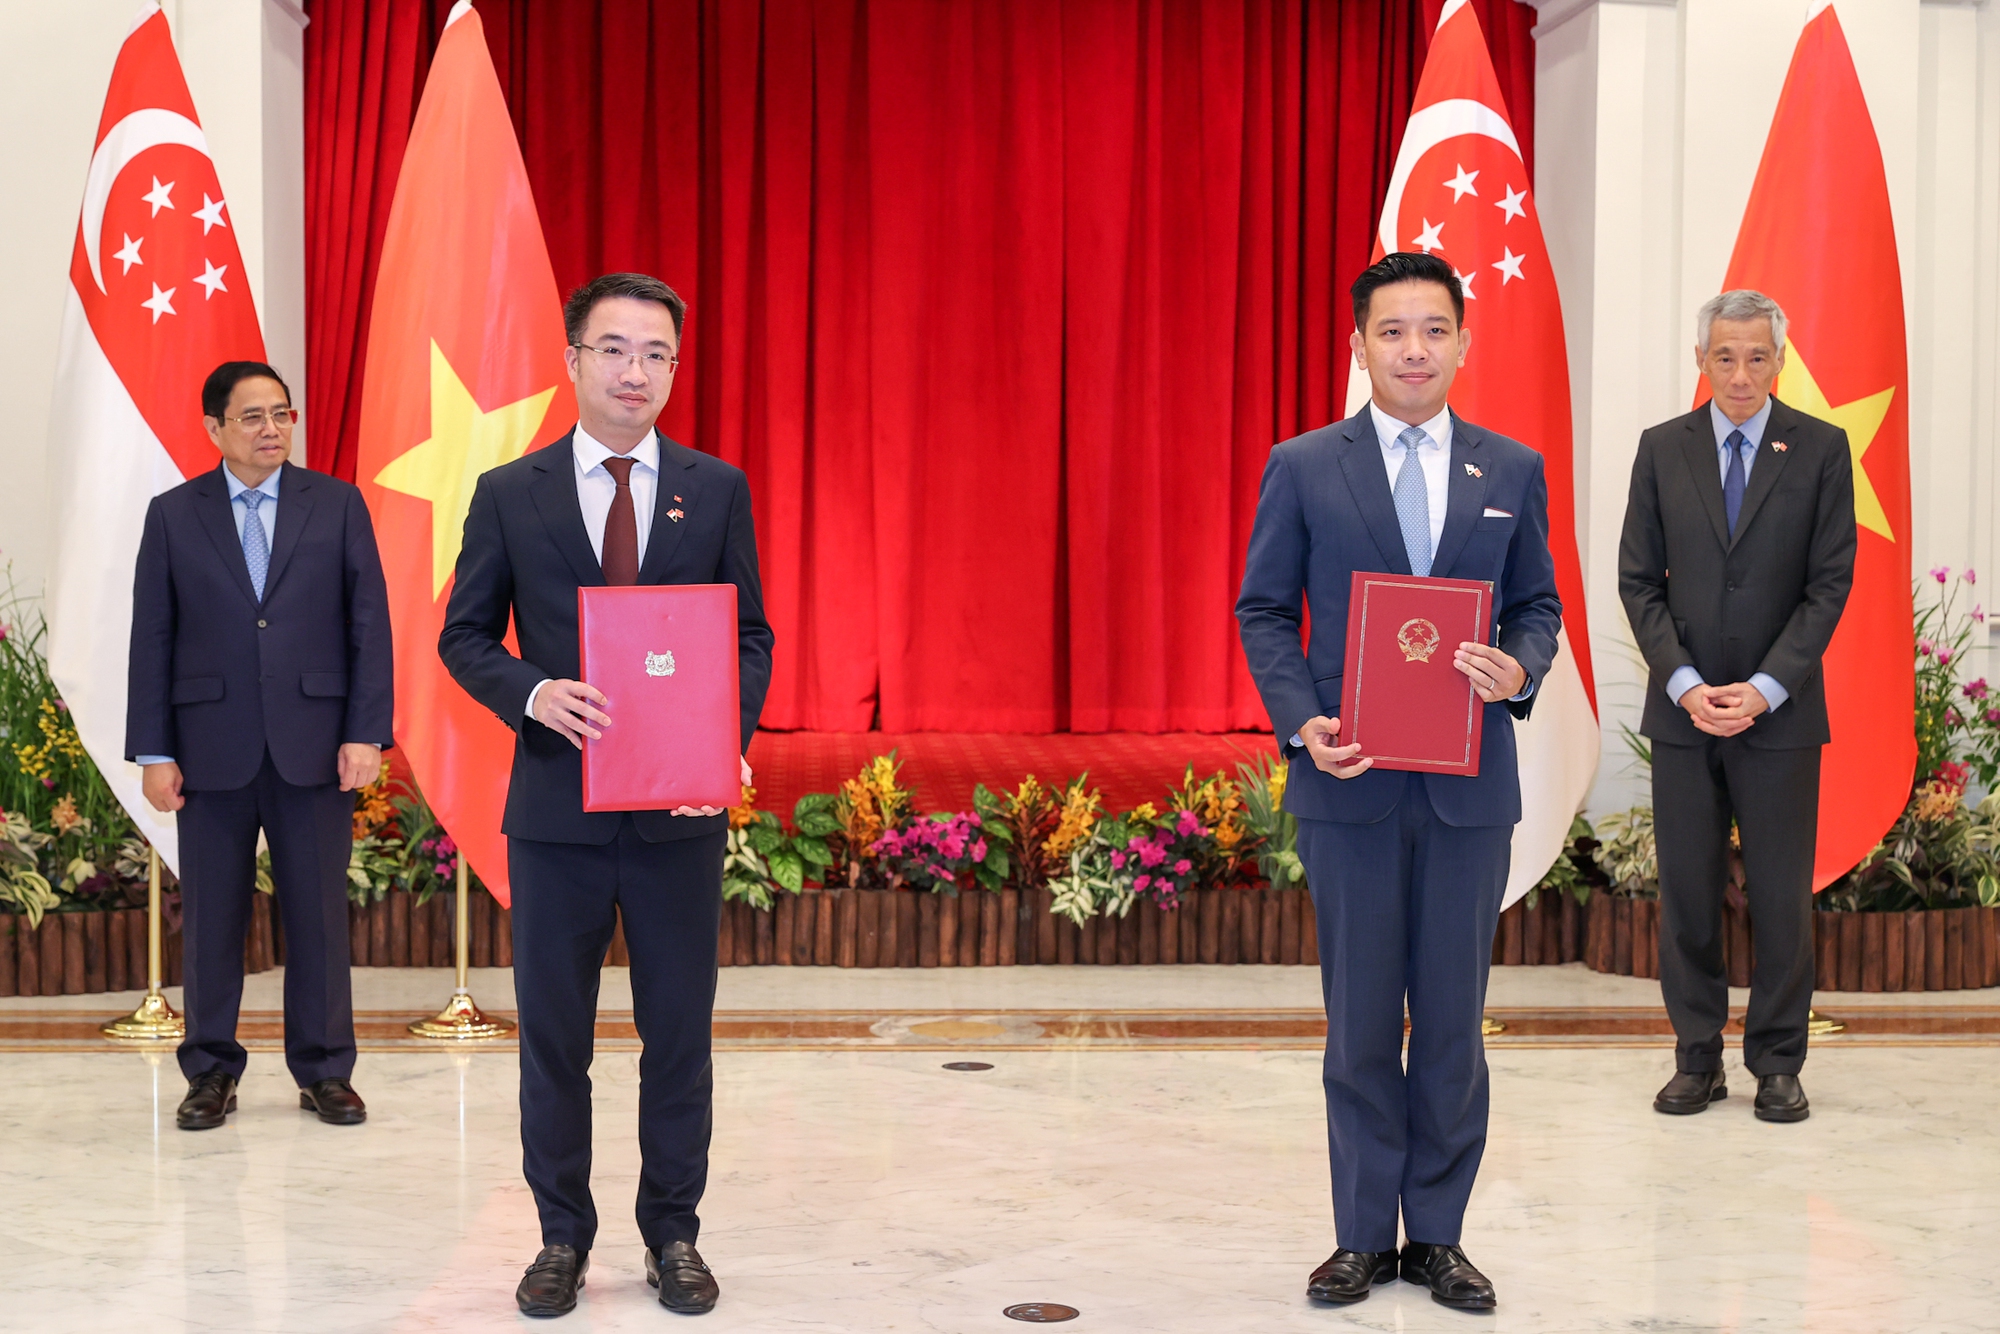 Việt Nam và Singapore thiết lập Quan hệ Đối tác kinh tế số, kinh tế xanh